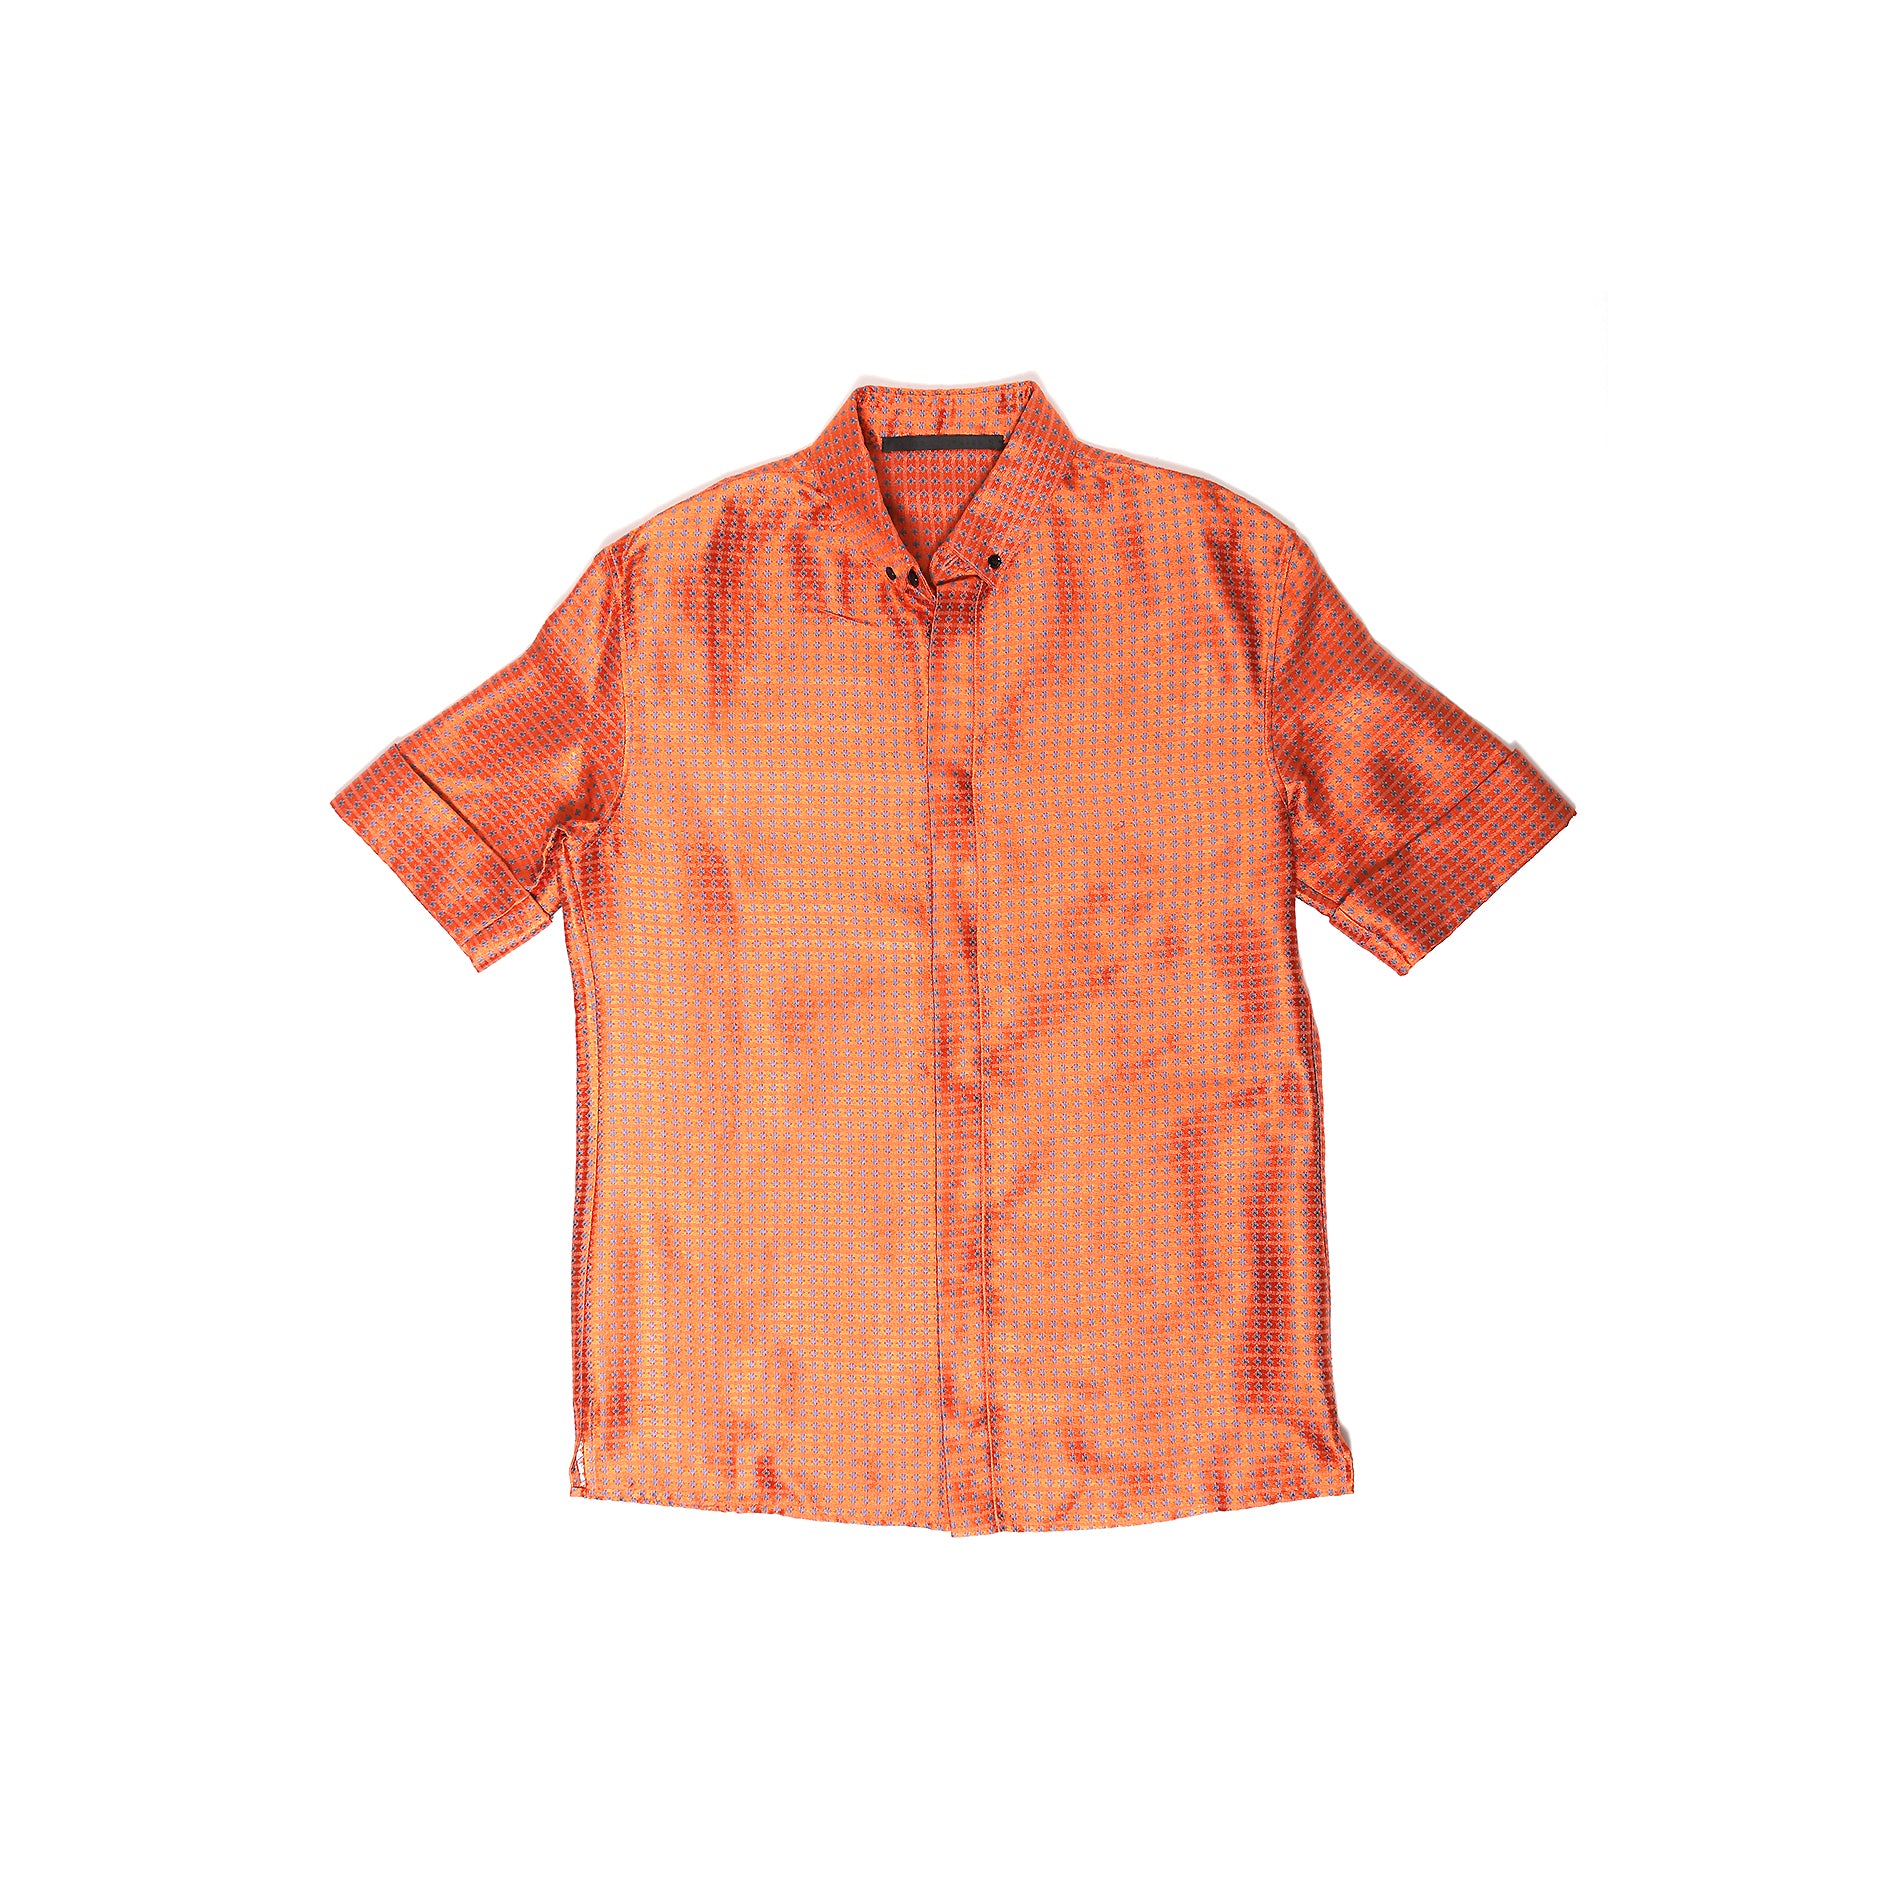 Haider Ackermann SS17 Orange Silk Short Sleeve Shirt